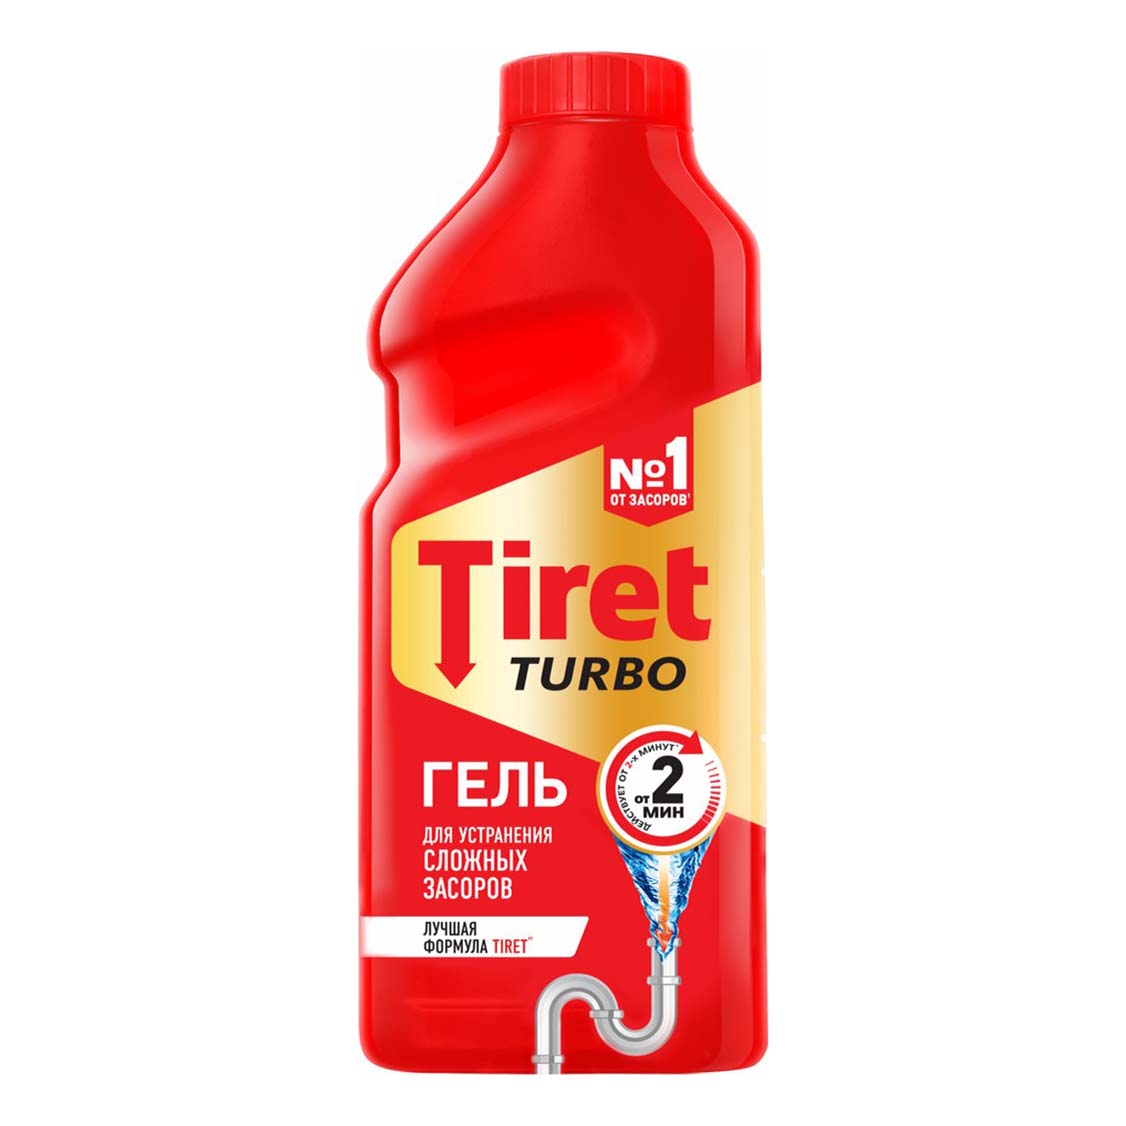 Гель Tiret Turbo для прочистки труб 1 л